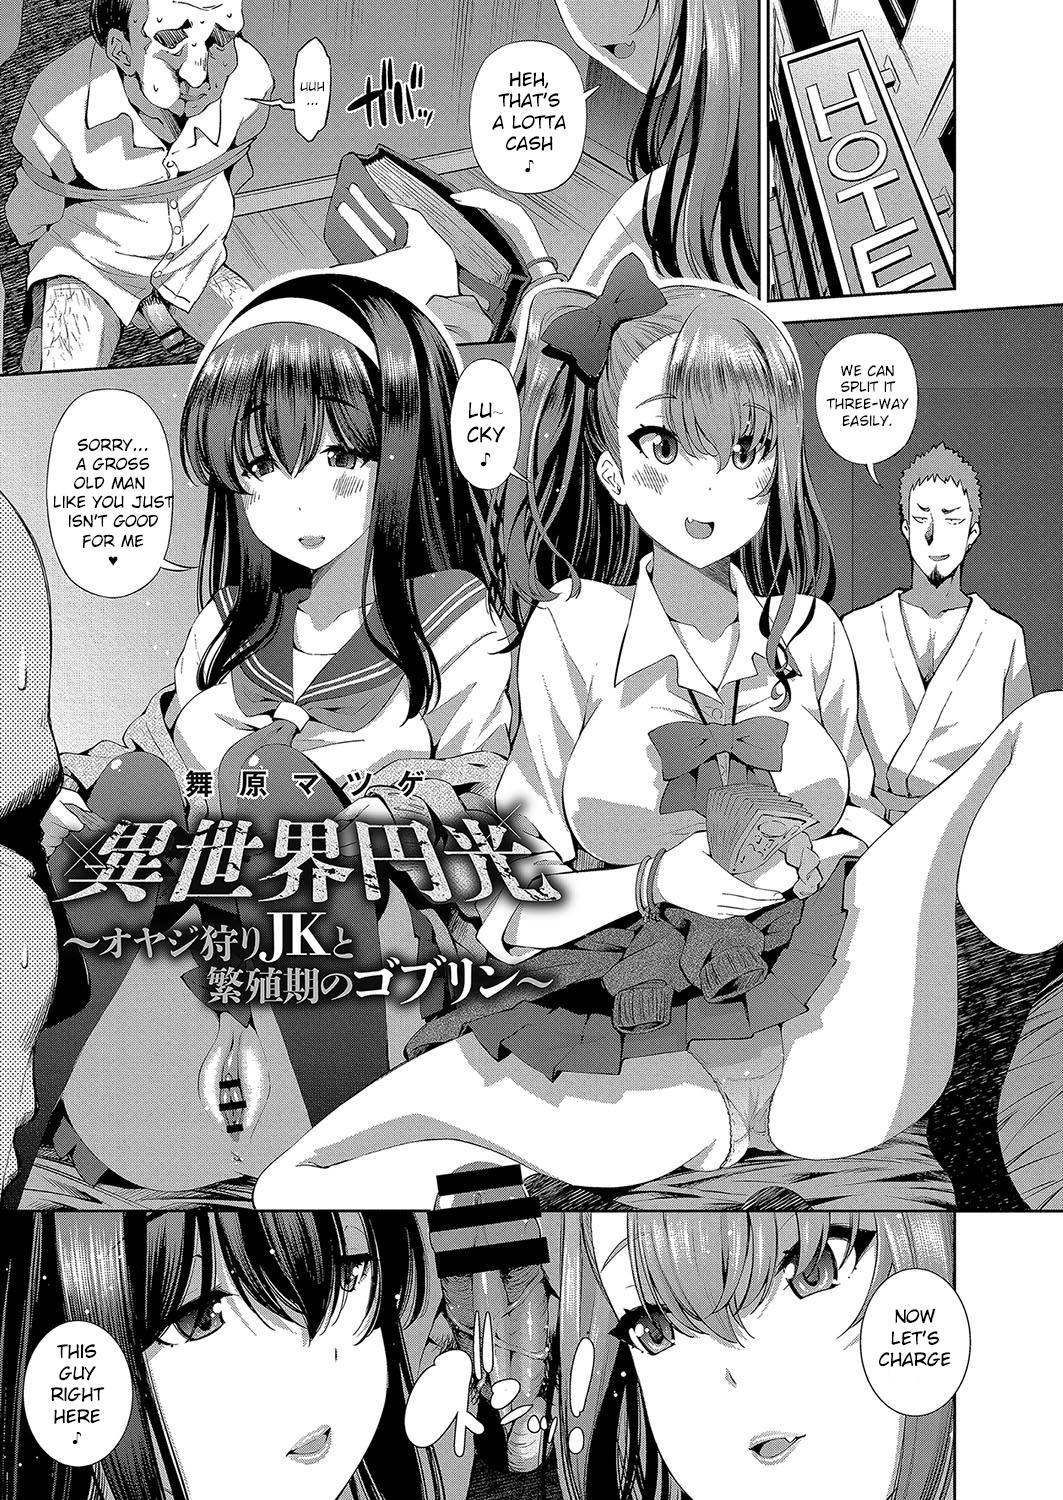 Manga isekai hentai